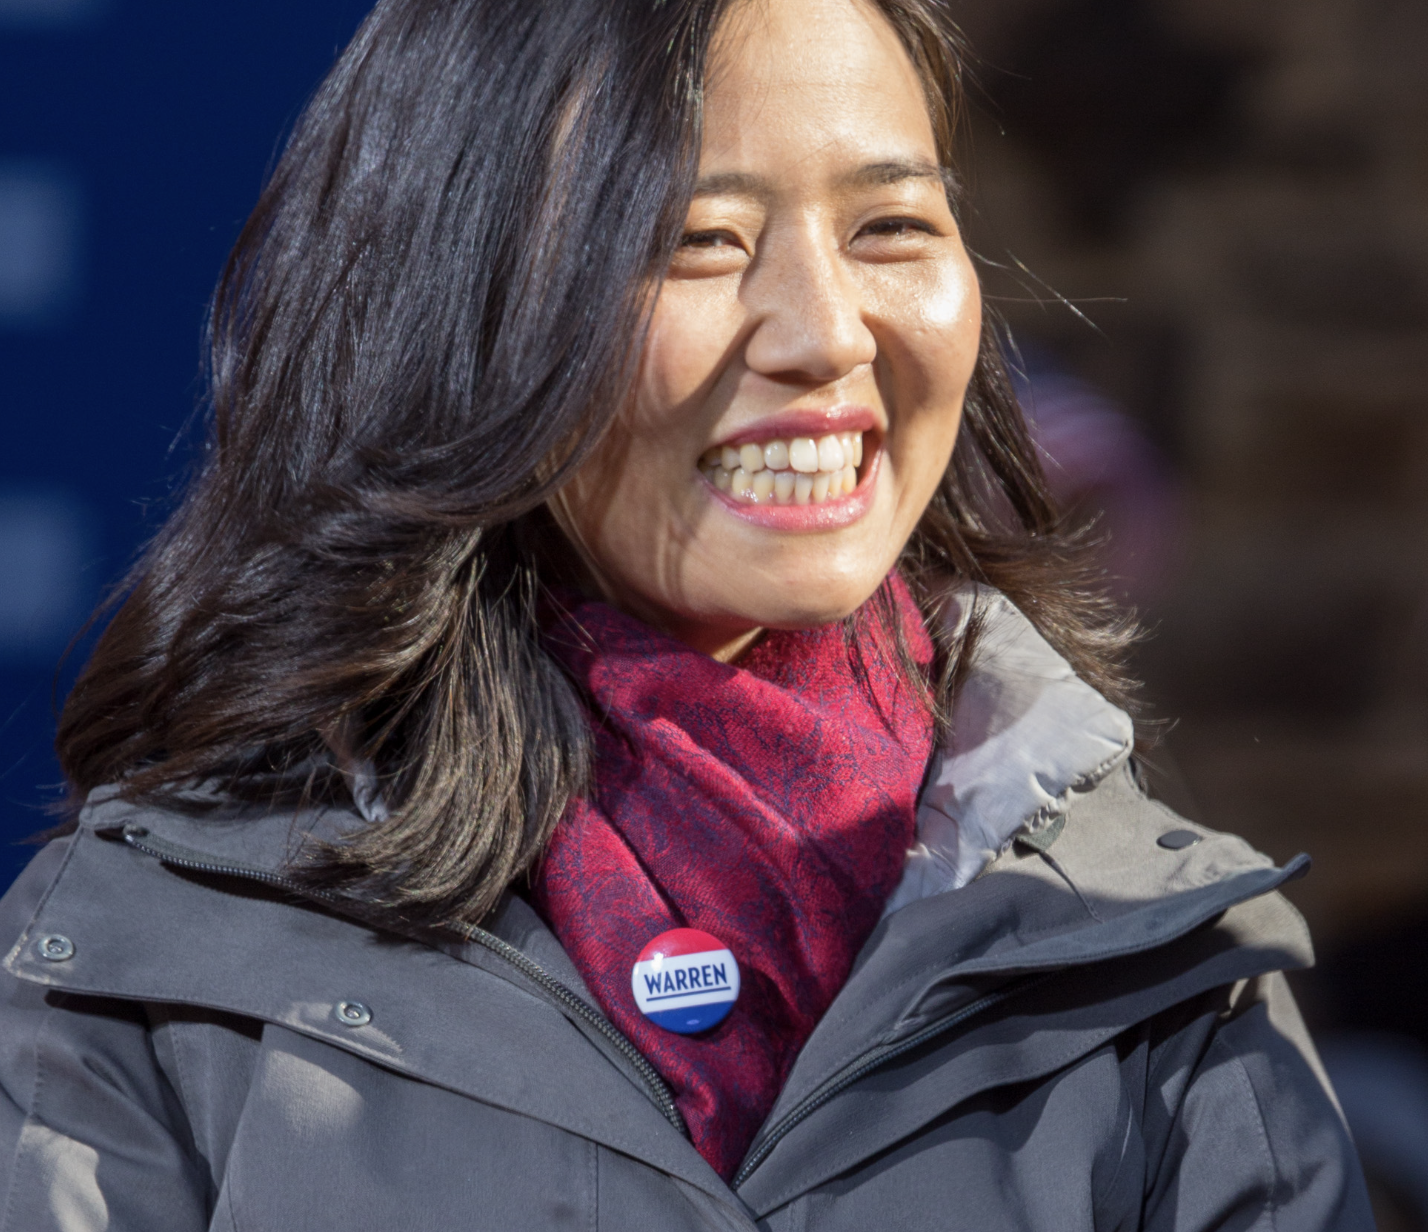 Boston Mayor Michelle Wu